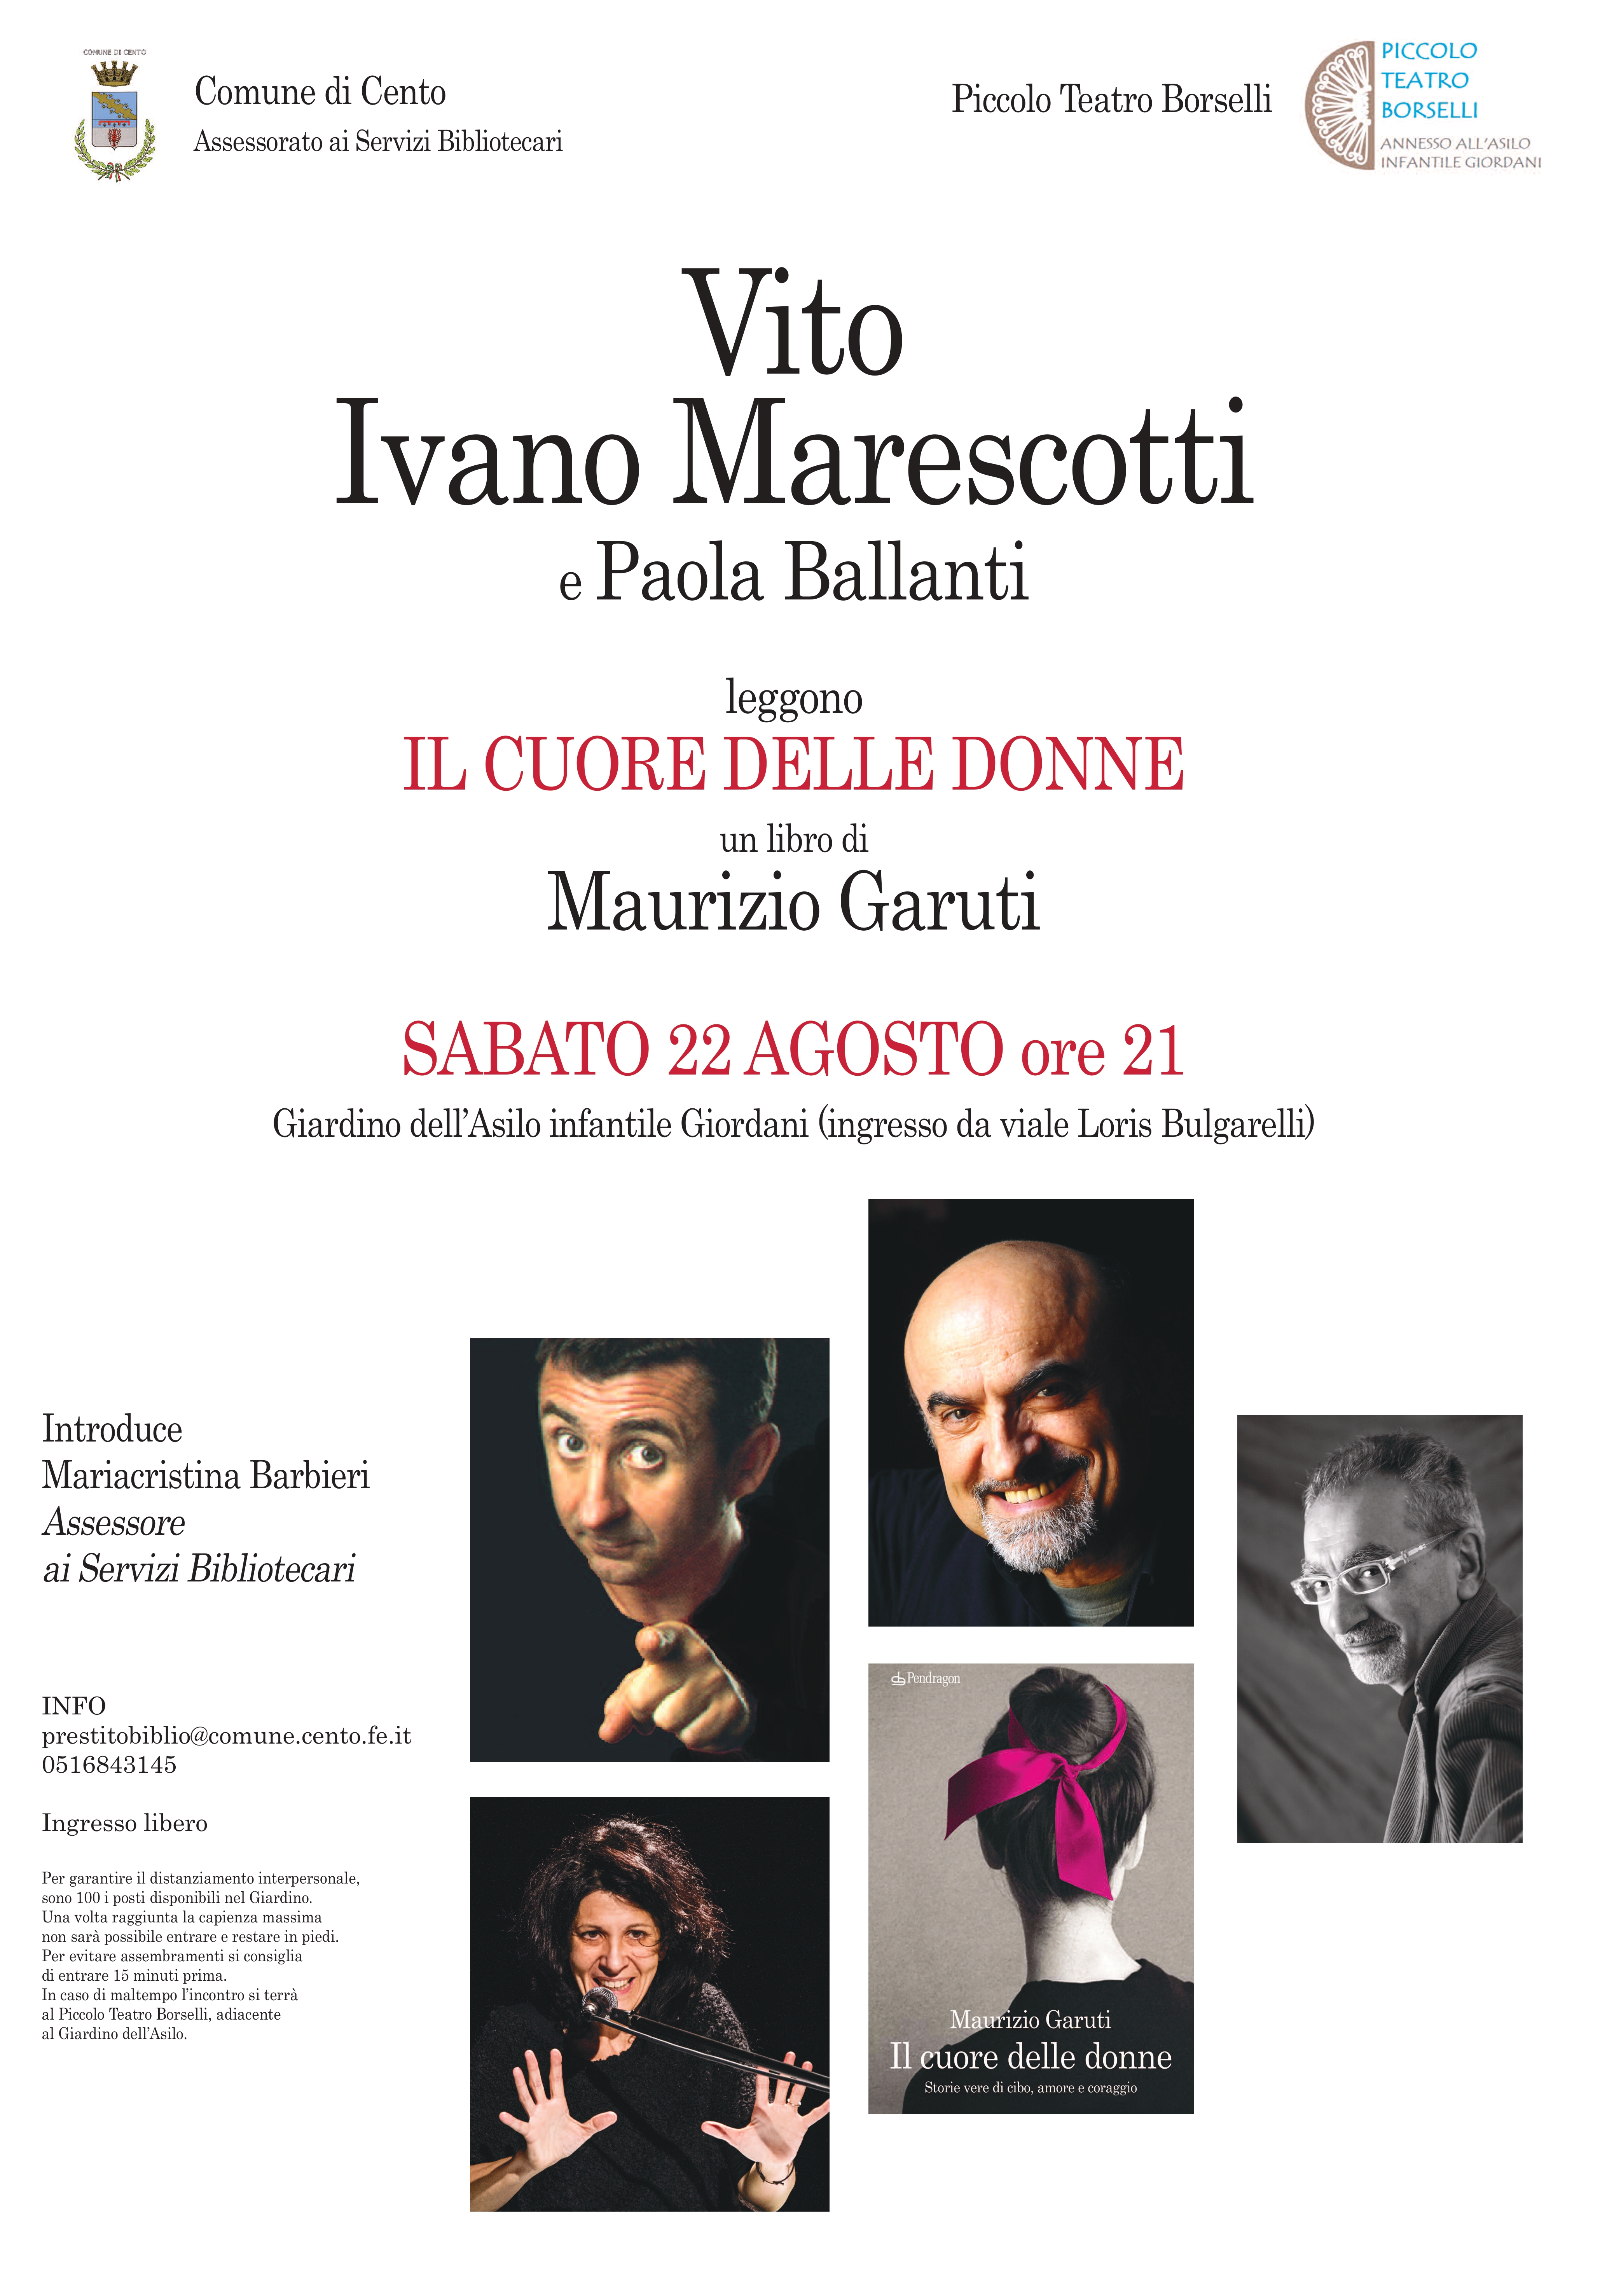 locandina informazioni presentazione libro con fotografia di Vito, Marescotti e Ballanti, Garuti autore e copertina libro